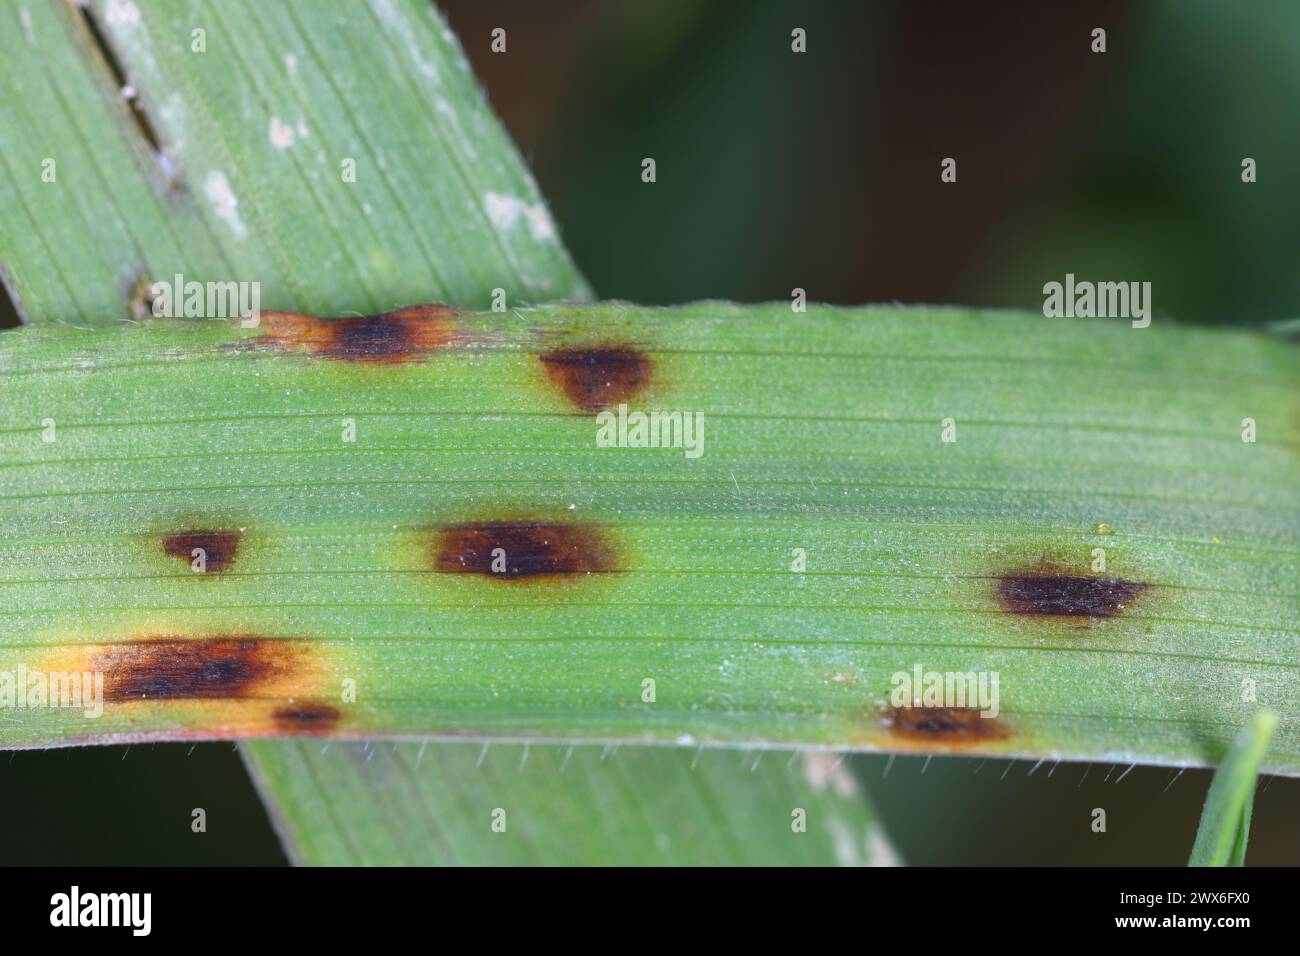 Sintomi di malattia causati da funghi patogeni sulle foglie di cereali. Foto Stock